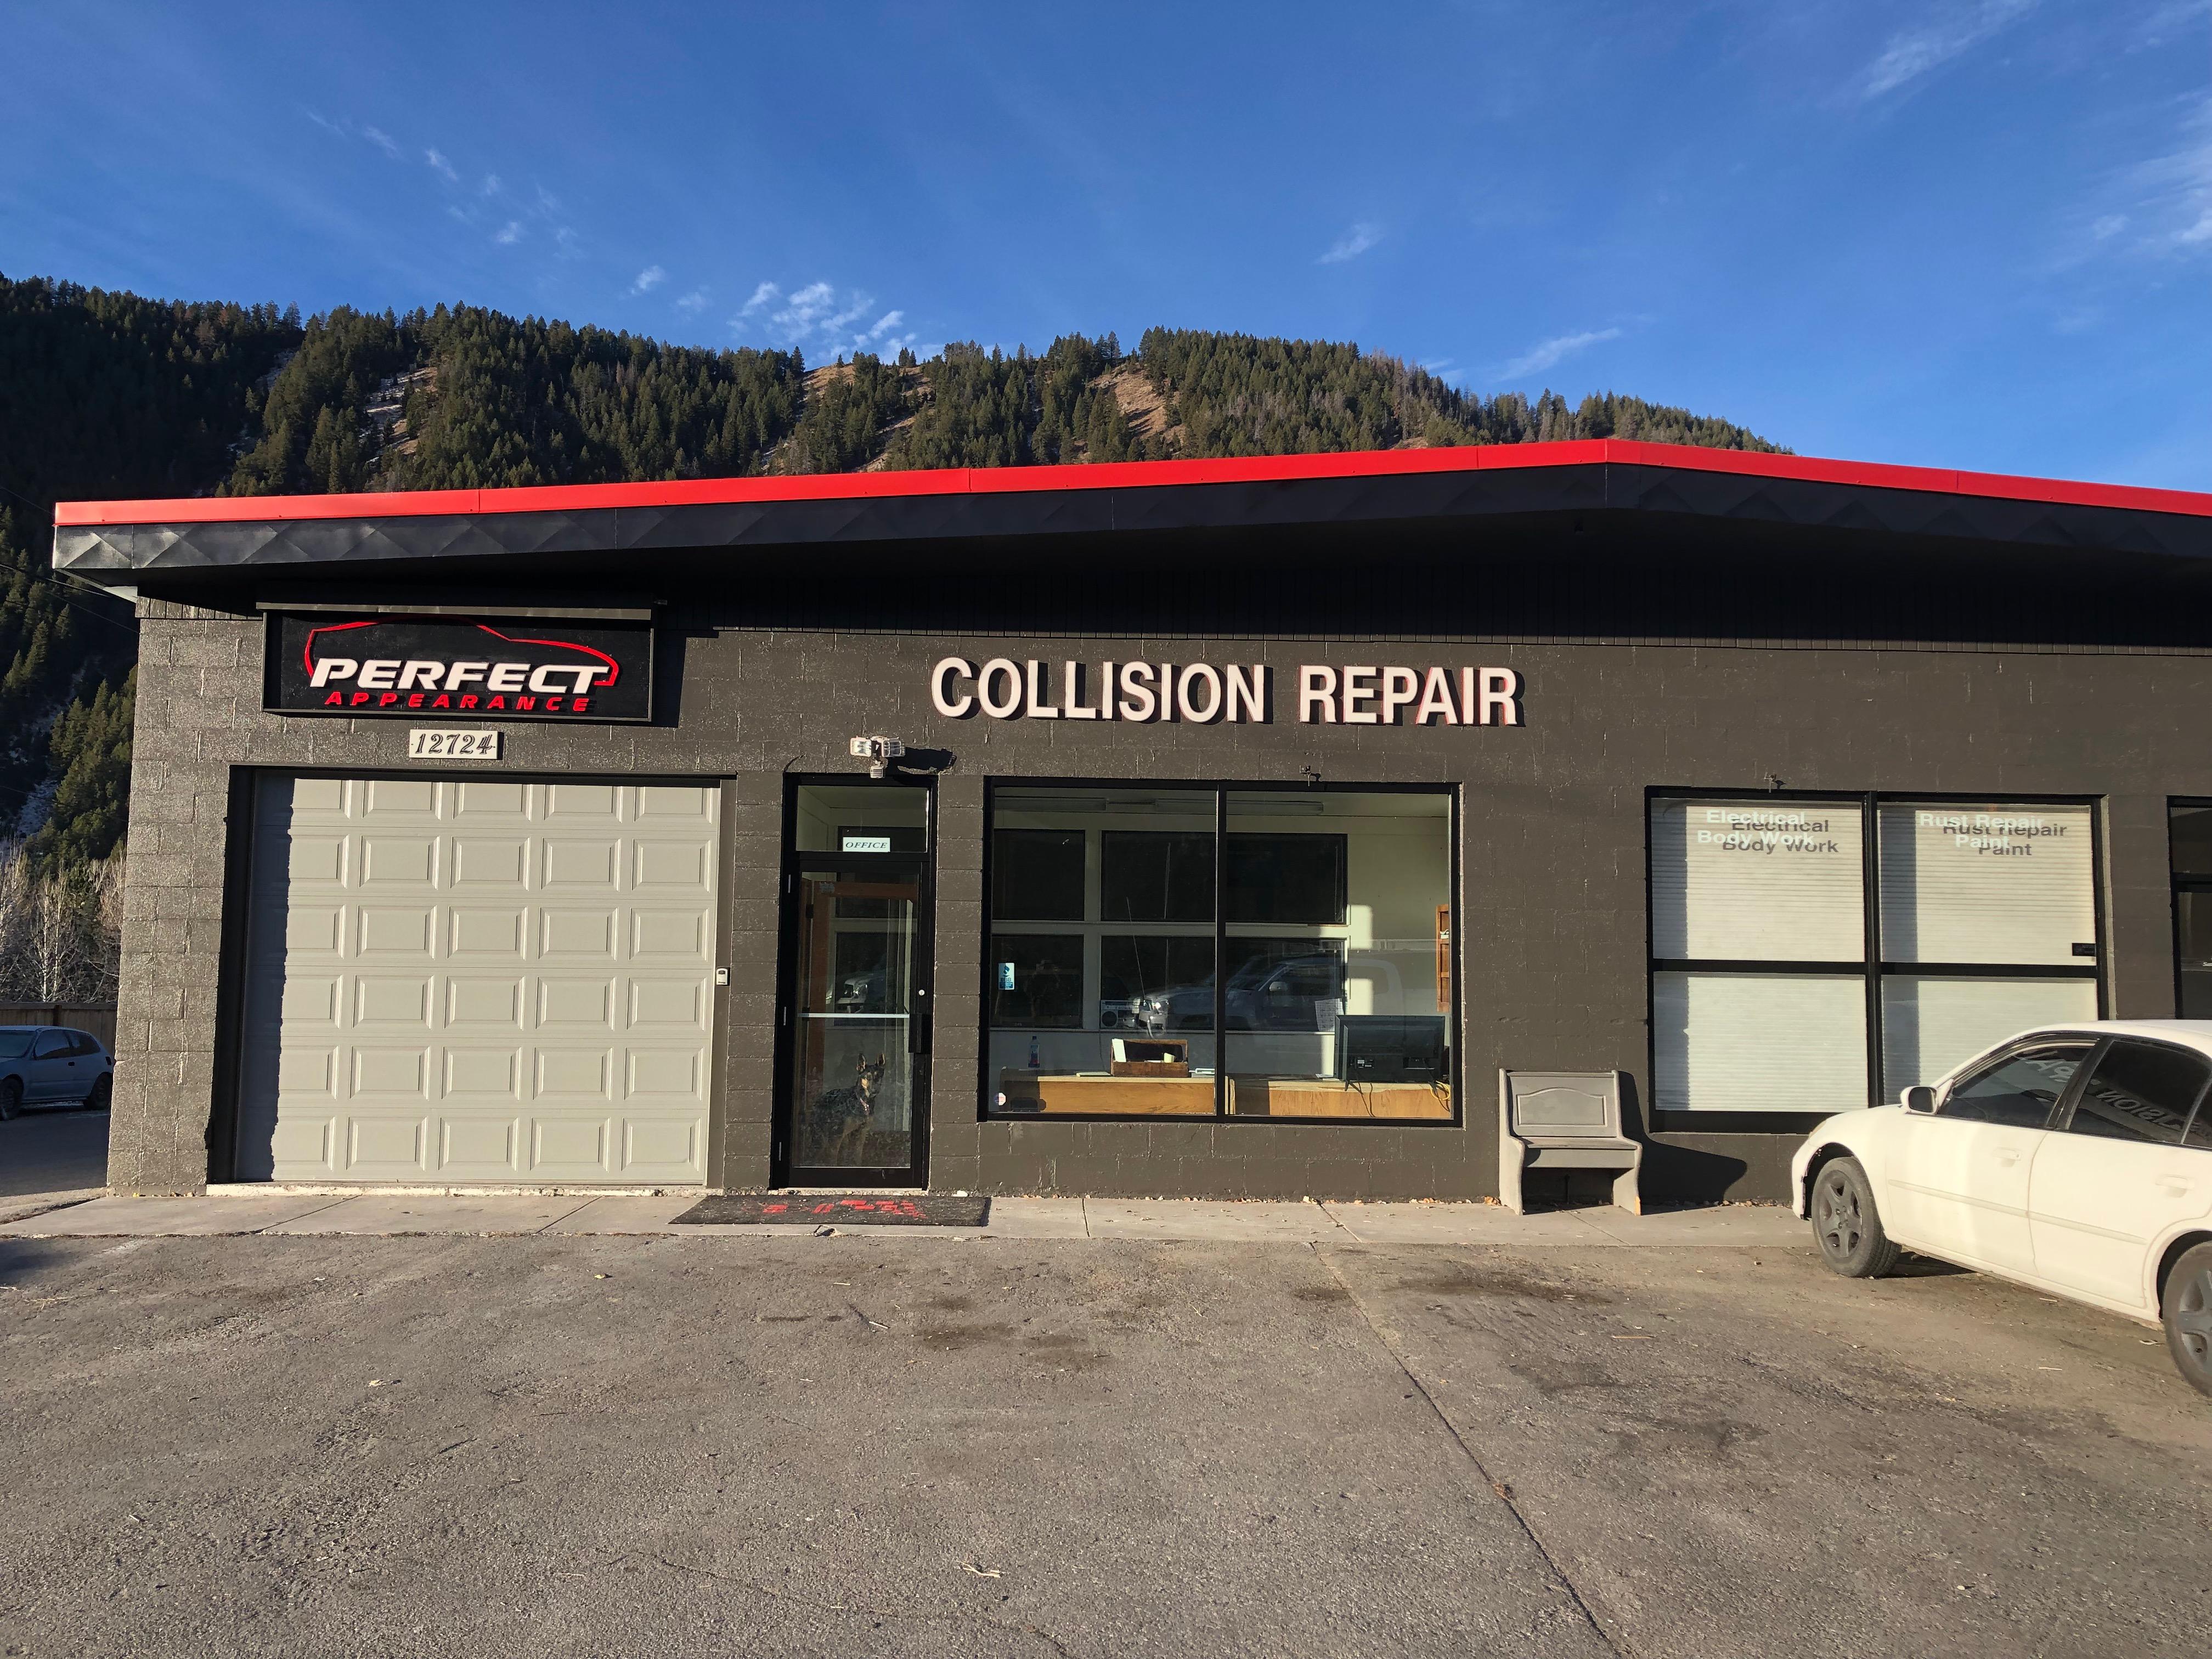 The Best Local Auto Repair & Collision Center!